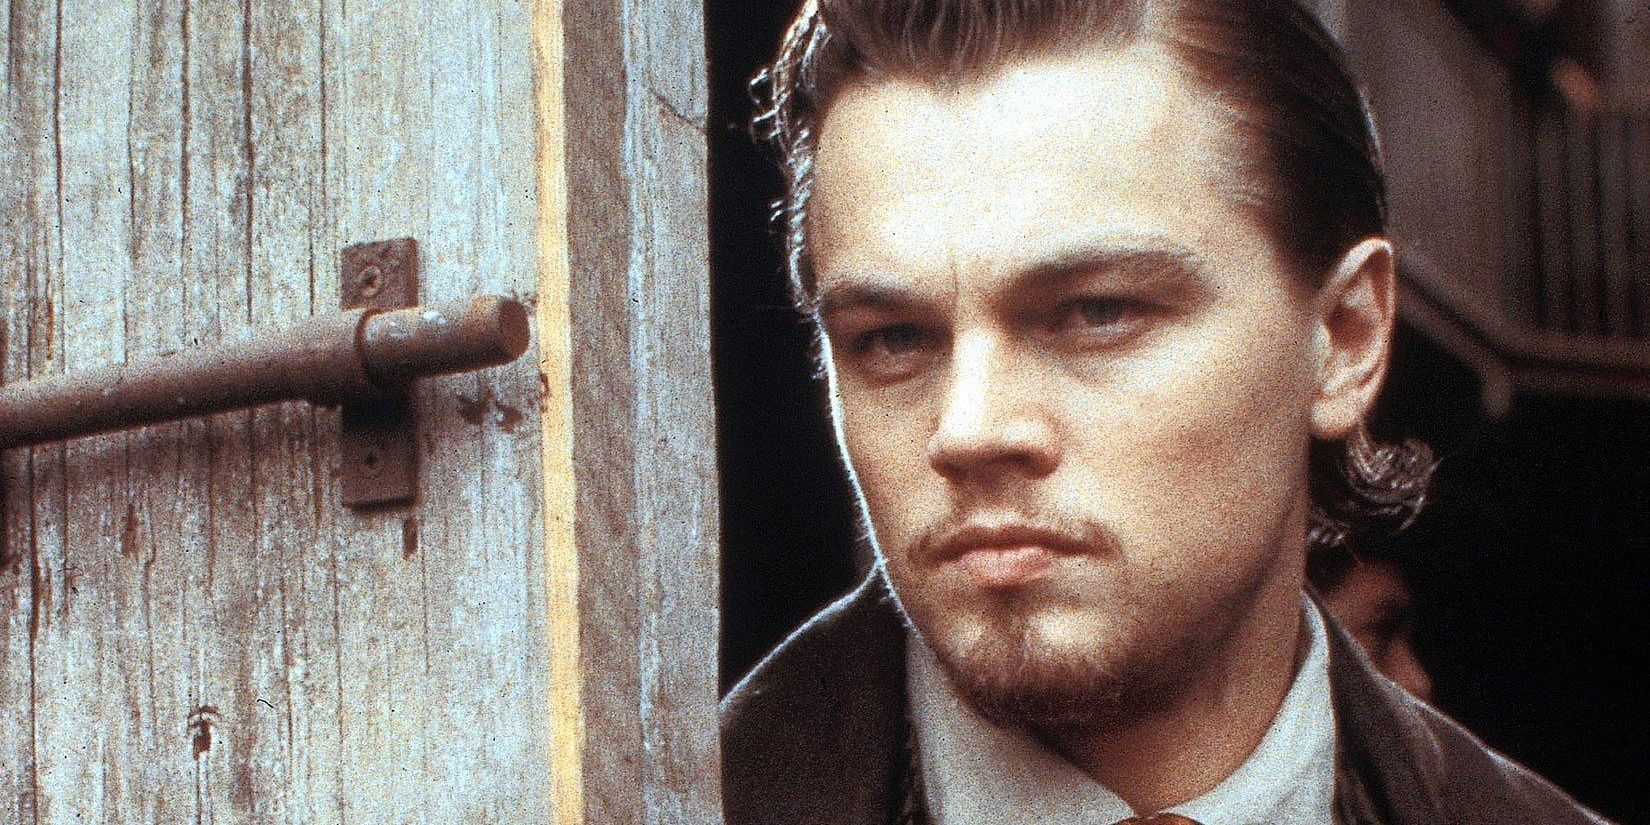 “Al menos reúnete con él”: De Niro le dijo a Scorsese que eligiera a DiCaprio 9 años antes de su primera película juntos